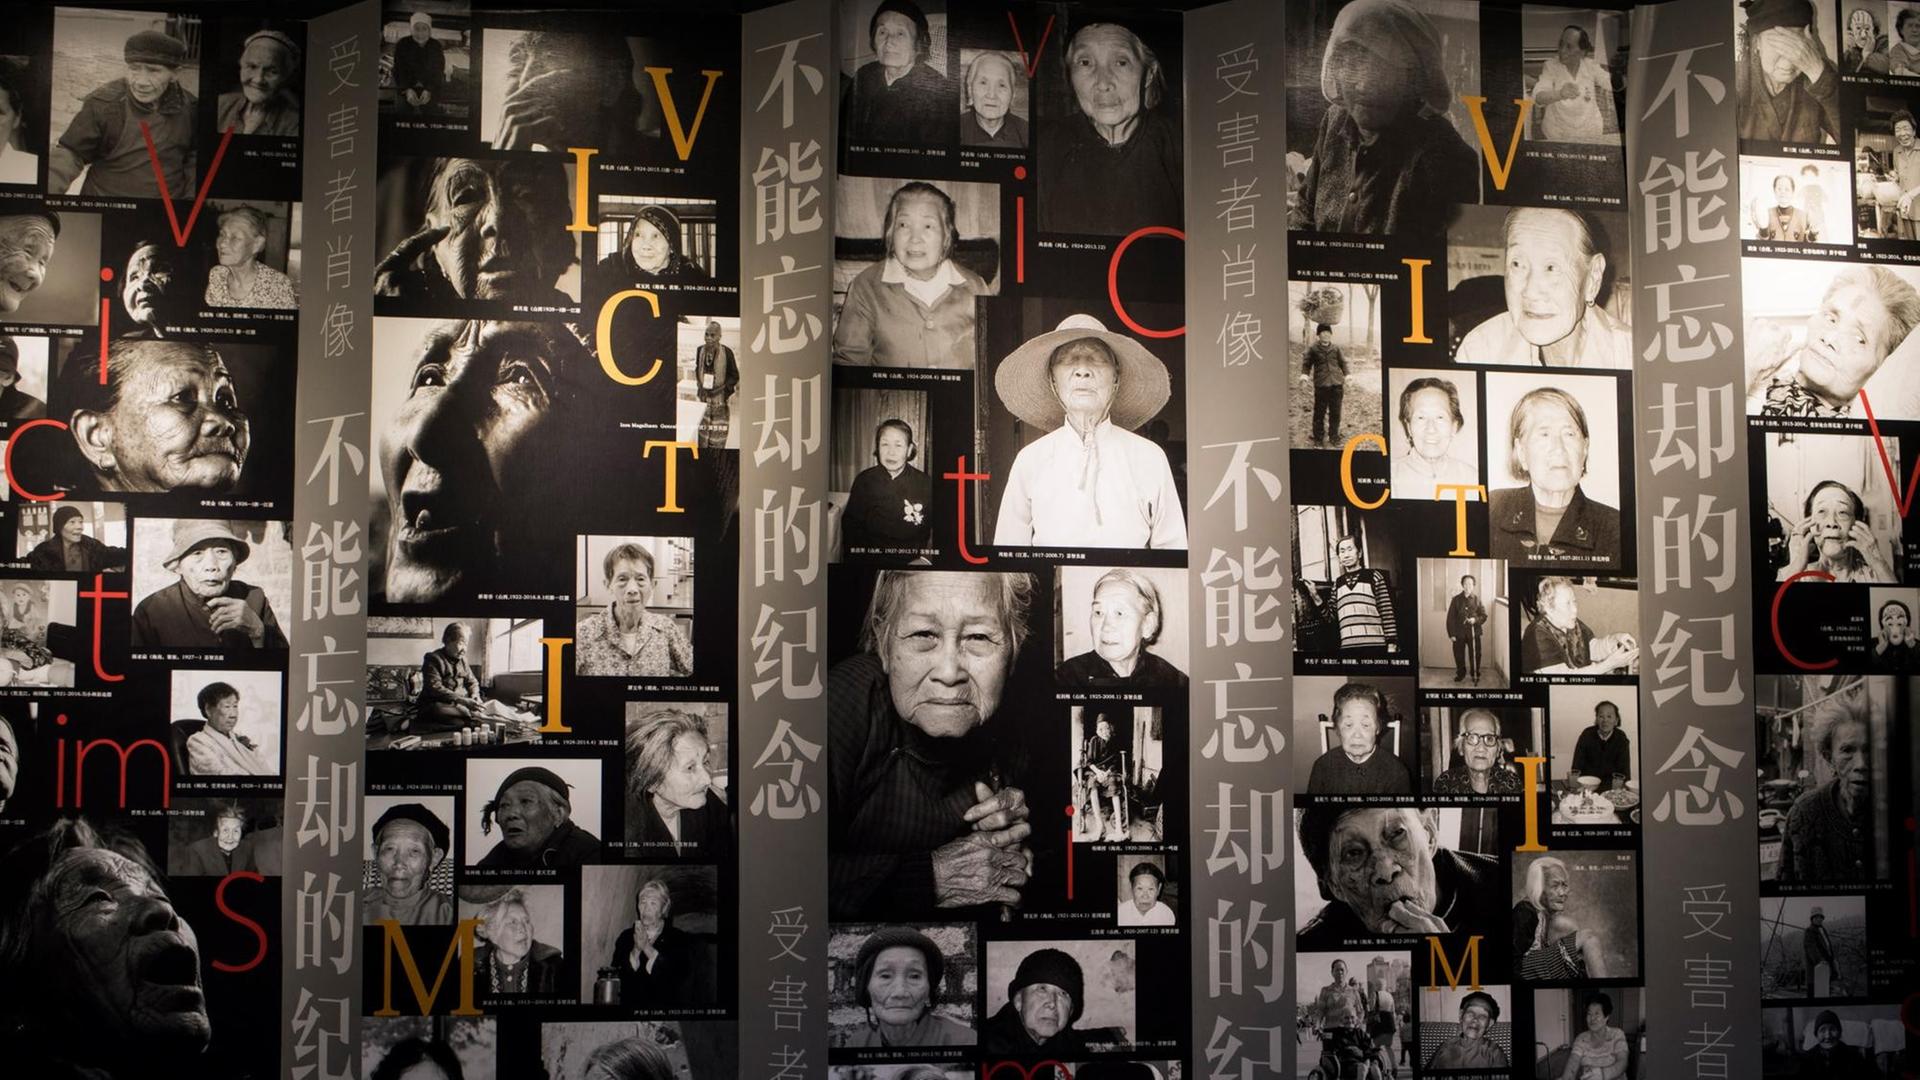 Fotos an einer Museumswand zeigen die Porträts ehemaliger "Trostfrauen".